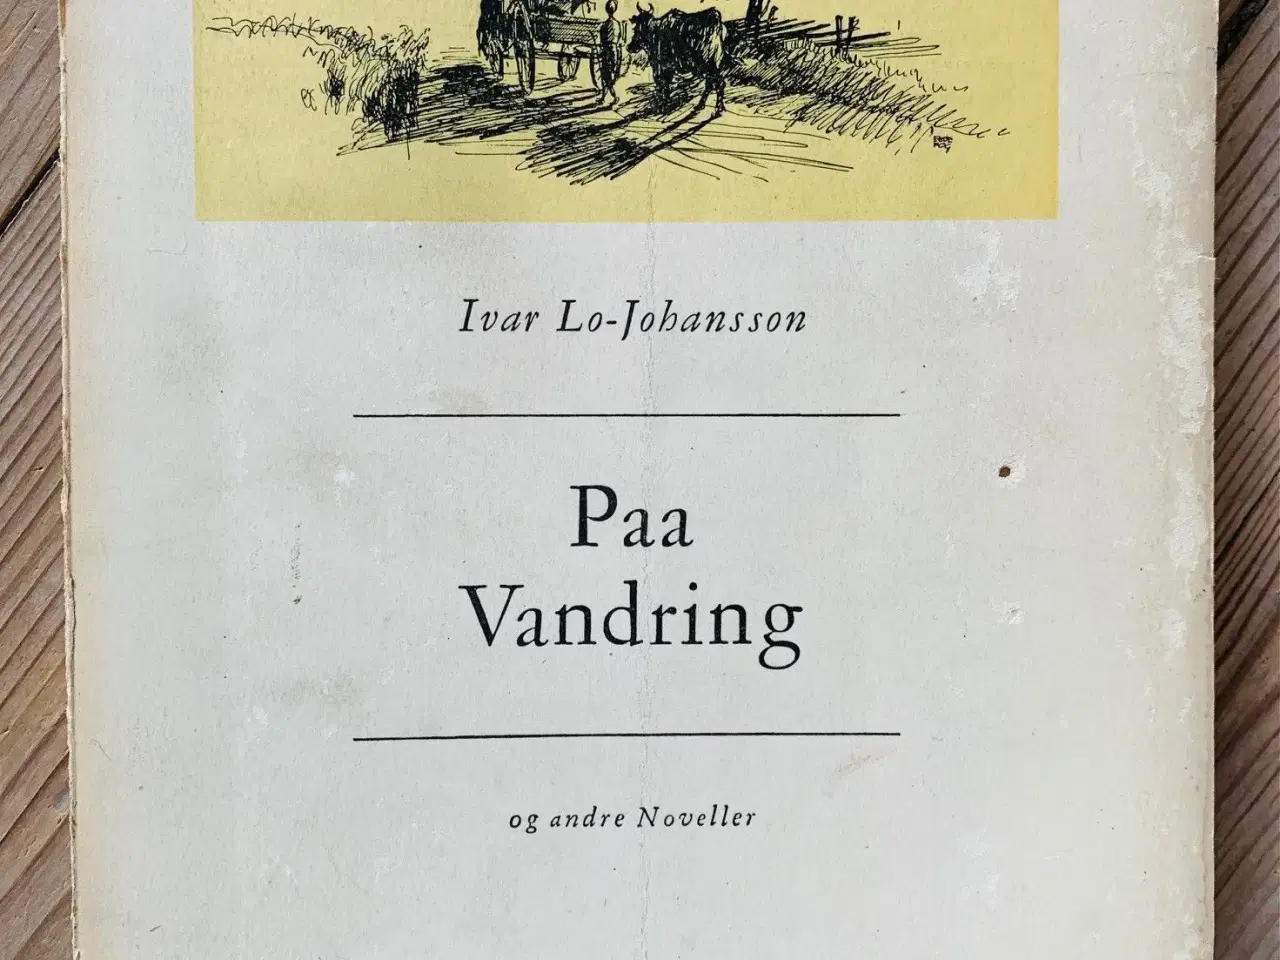 Billede 1 - Paa Vandring (1947) Ivar Lo-Johansson